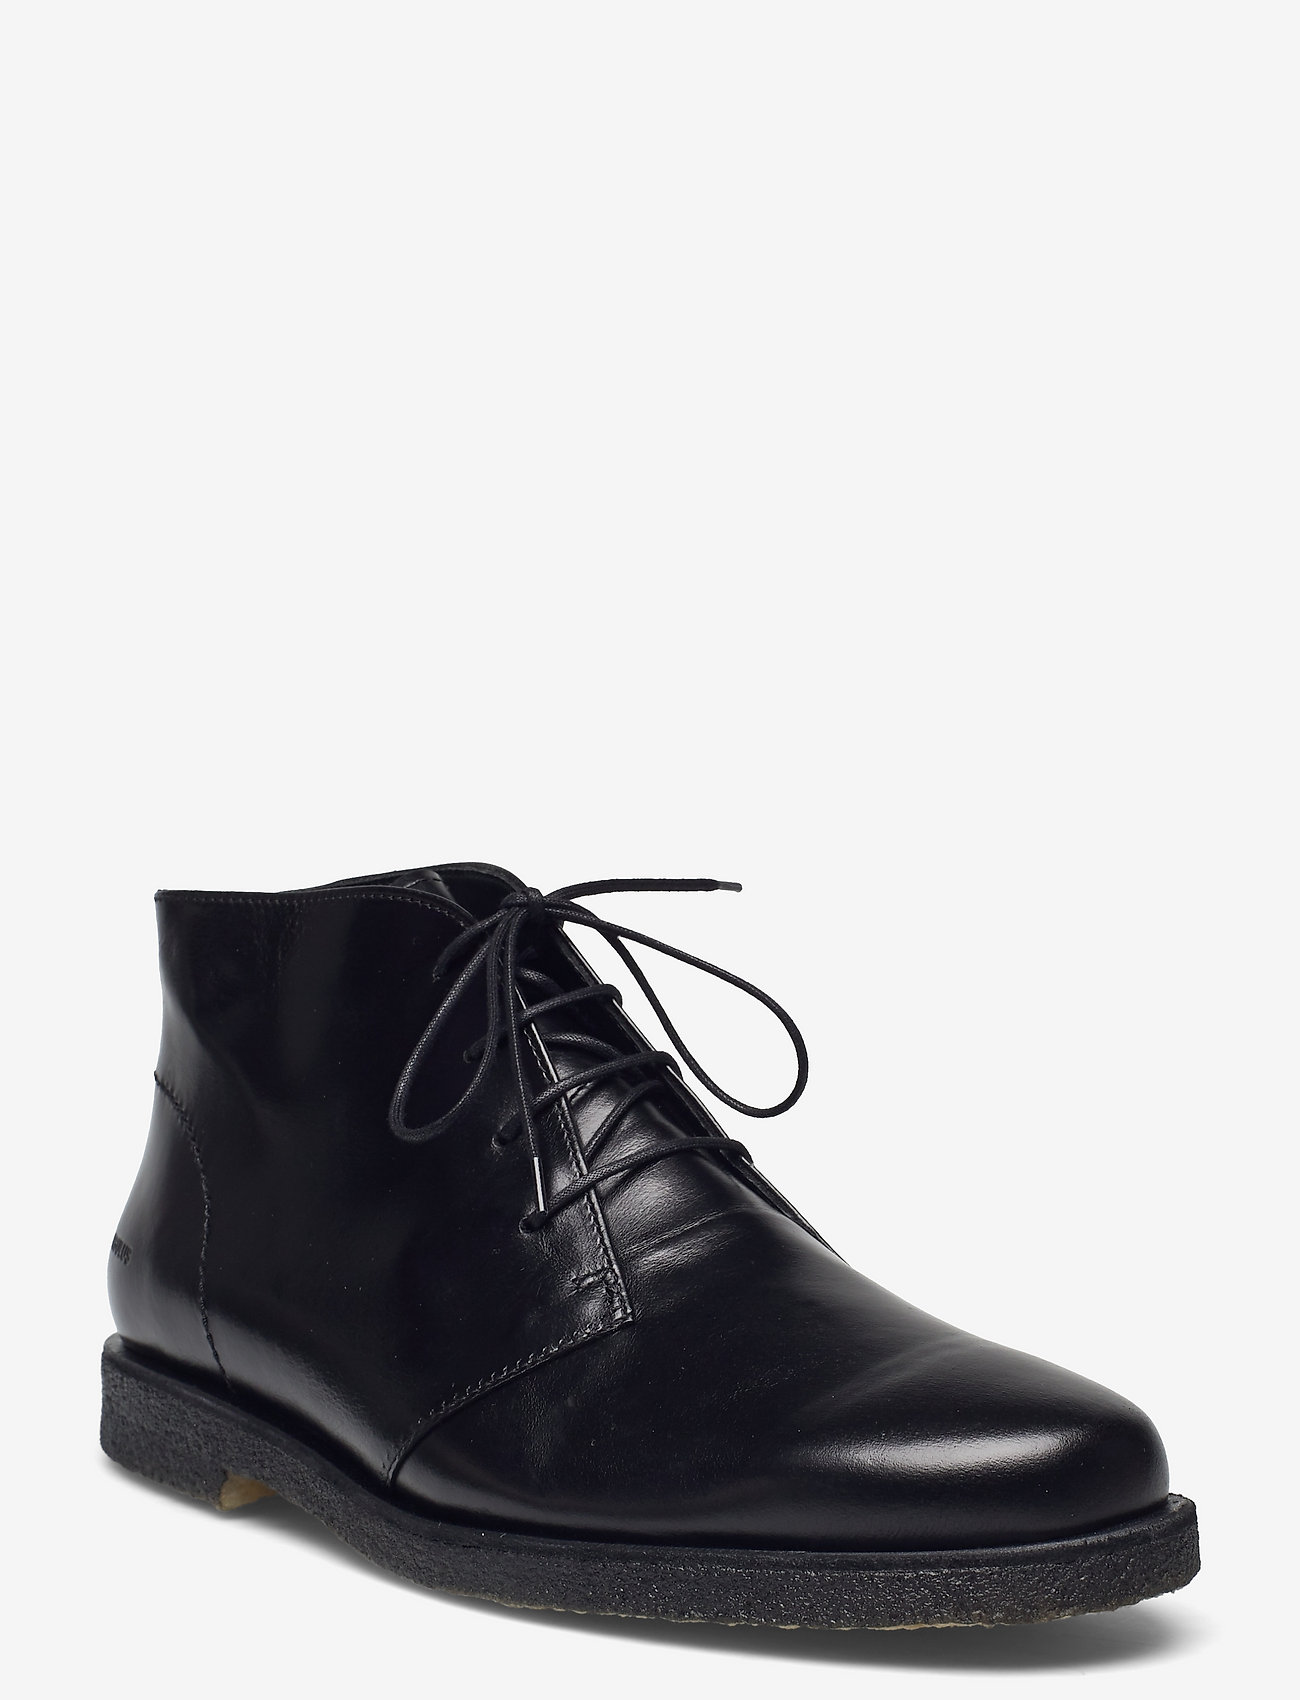 ANGULUS - Shoes - flat - desert boots - 1835 black - 0